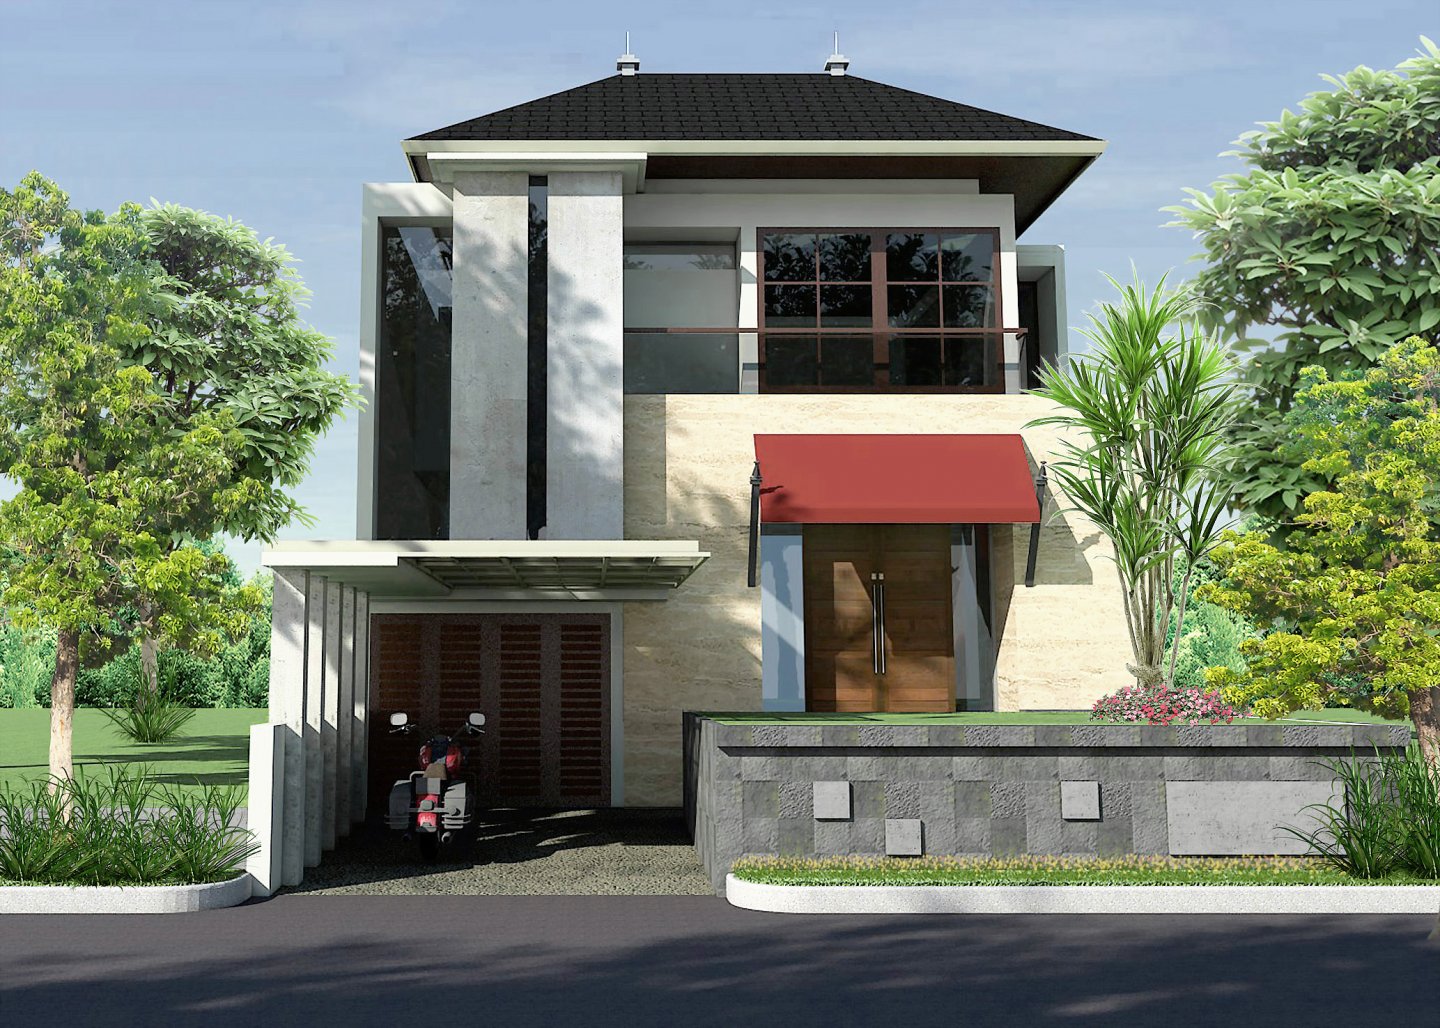  Desain  Rumah  Pondok Indah  Arsitektur Doffindo Internusa